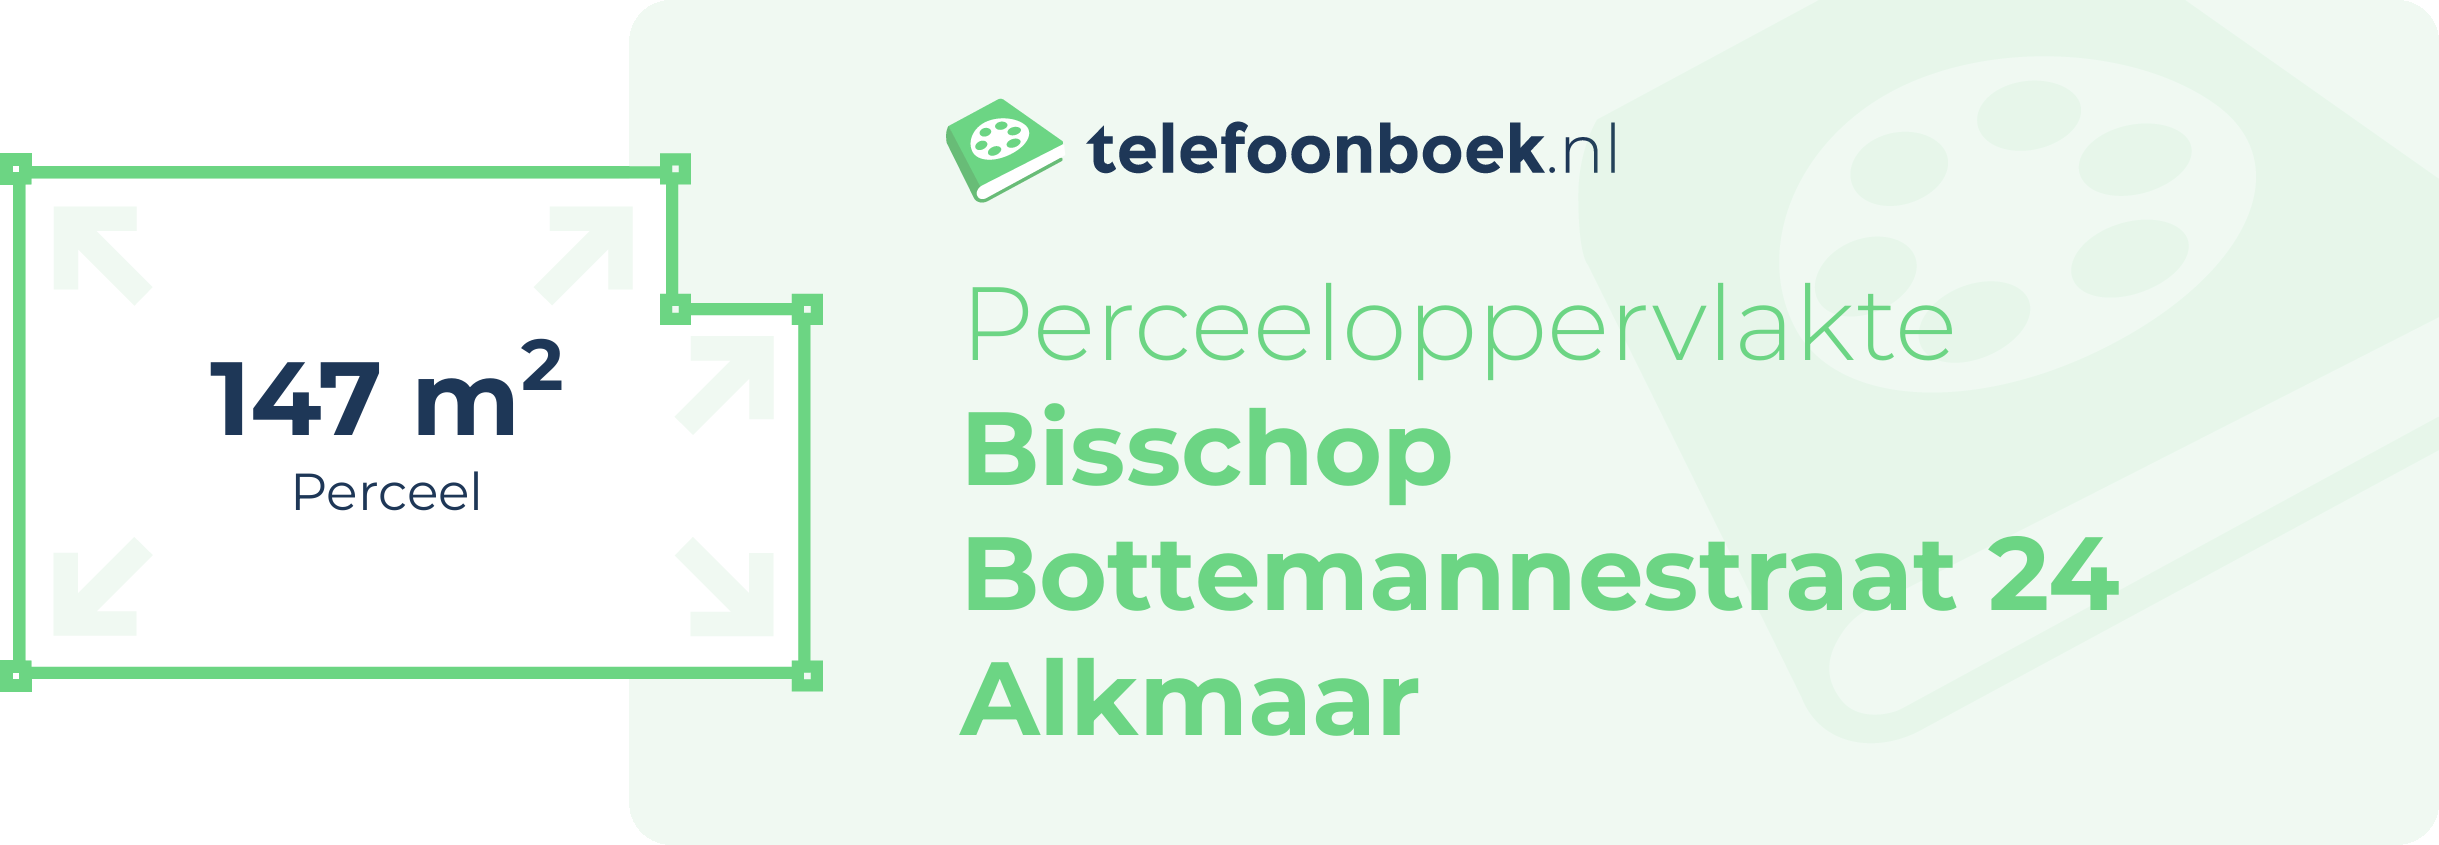 Perceeloppervlakte Bisschop Bottemannestraat 24 Alkmaar